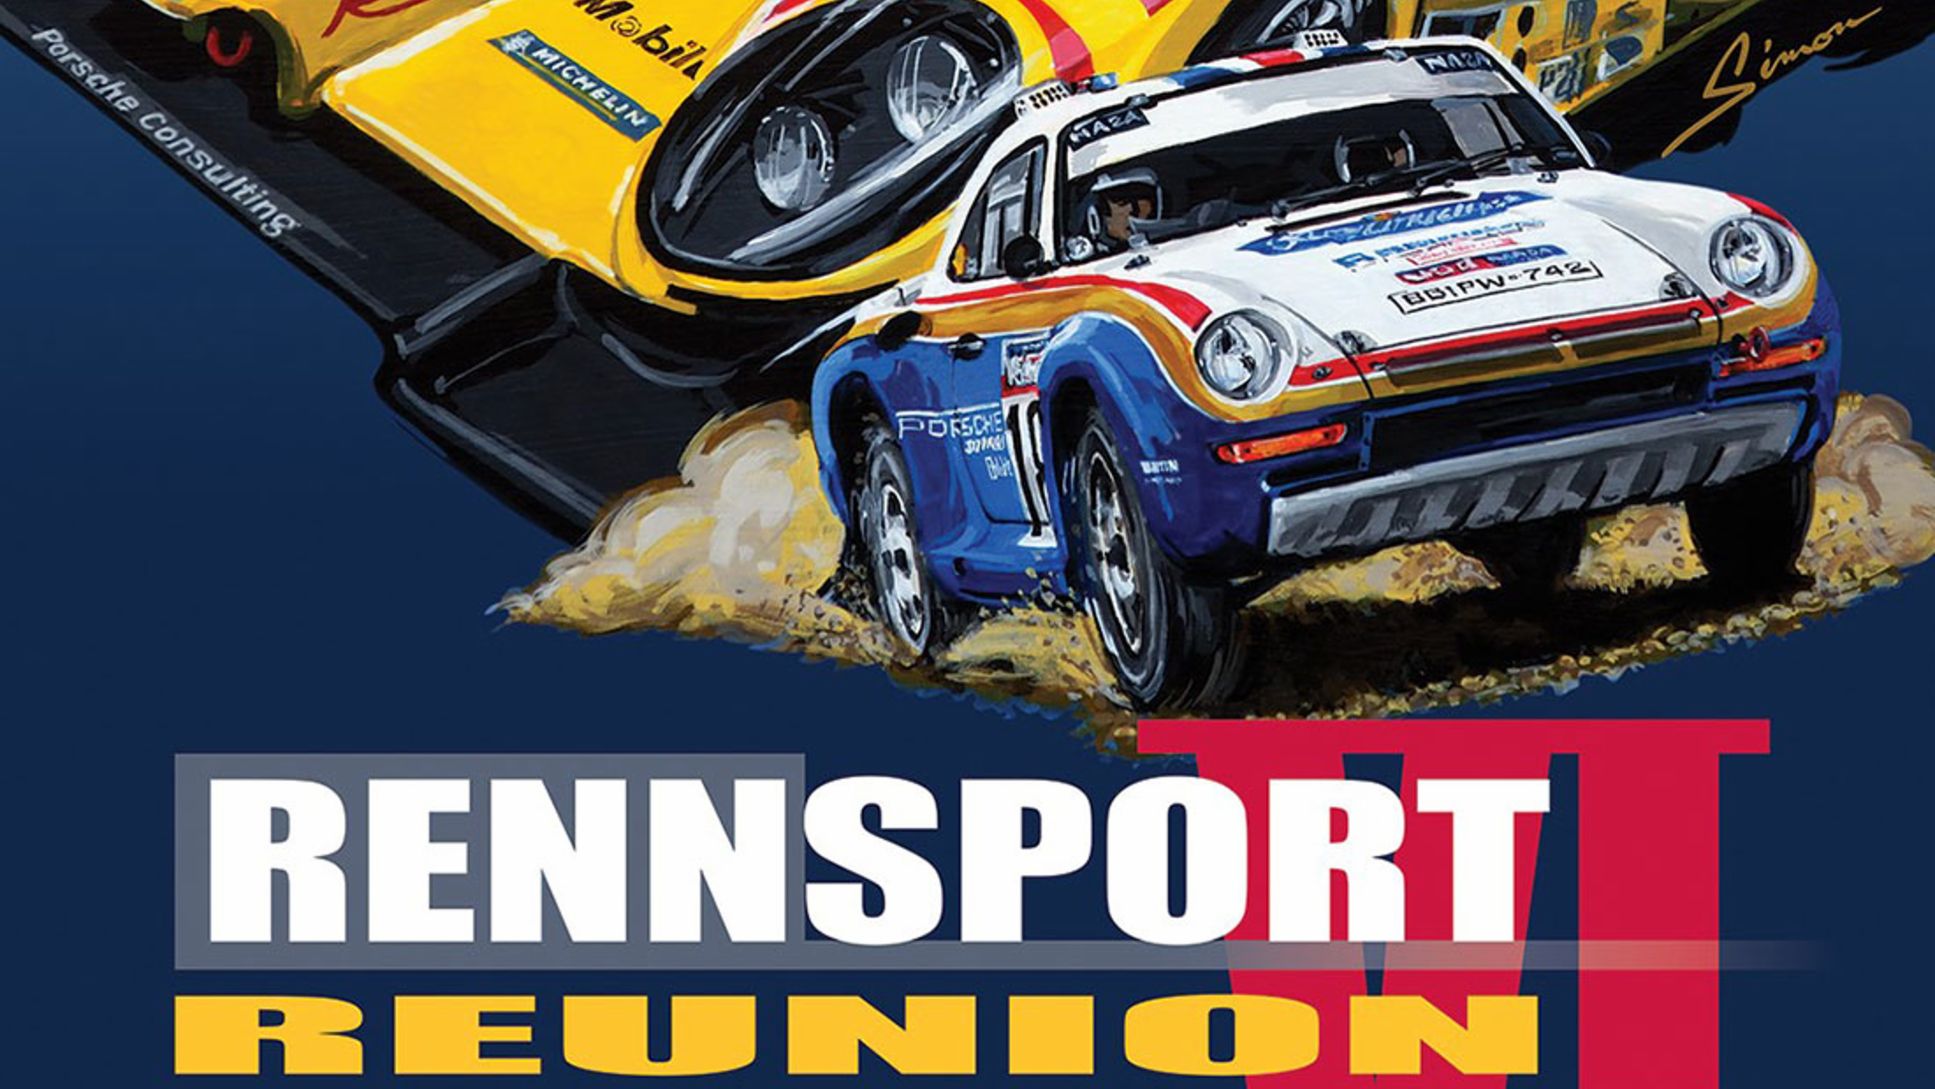 Official Poster for Rennsport Reunion VI, 2018, Porsche AG